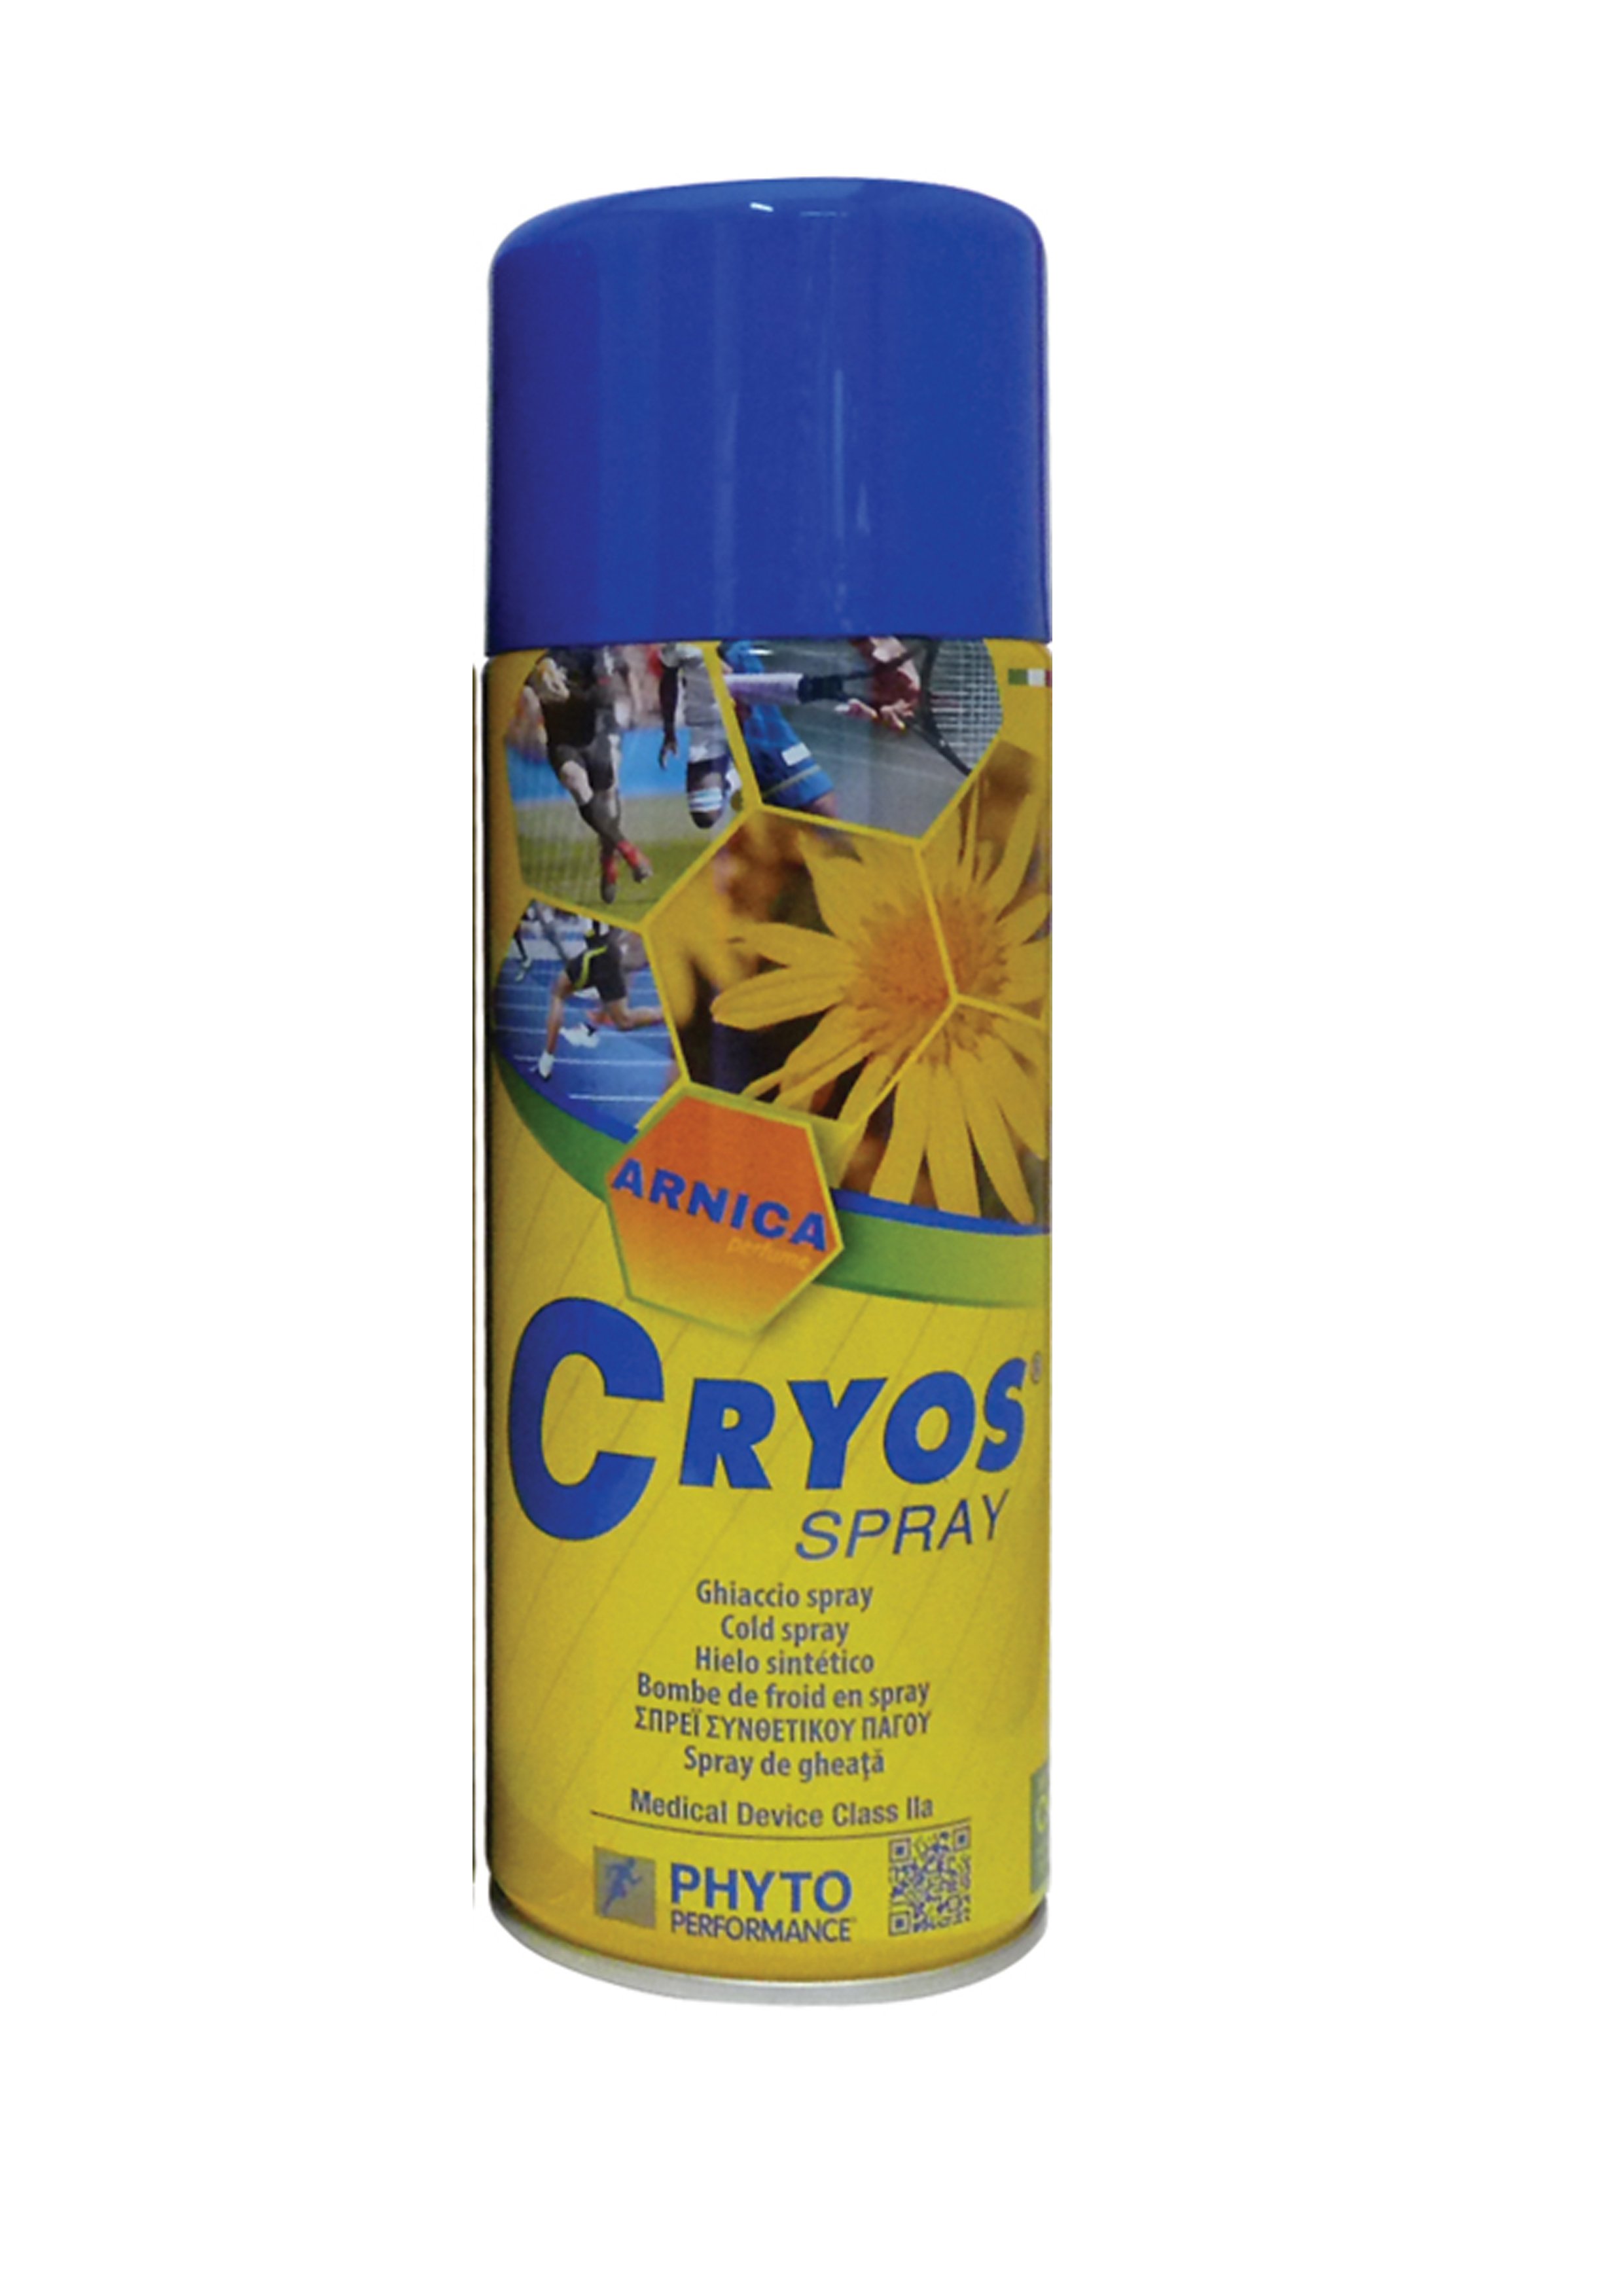 Ψυκτικό Cryos Spray 400ml με Άρωμα Άρνικας REF:P200.19 PhytoPerformance